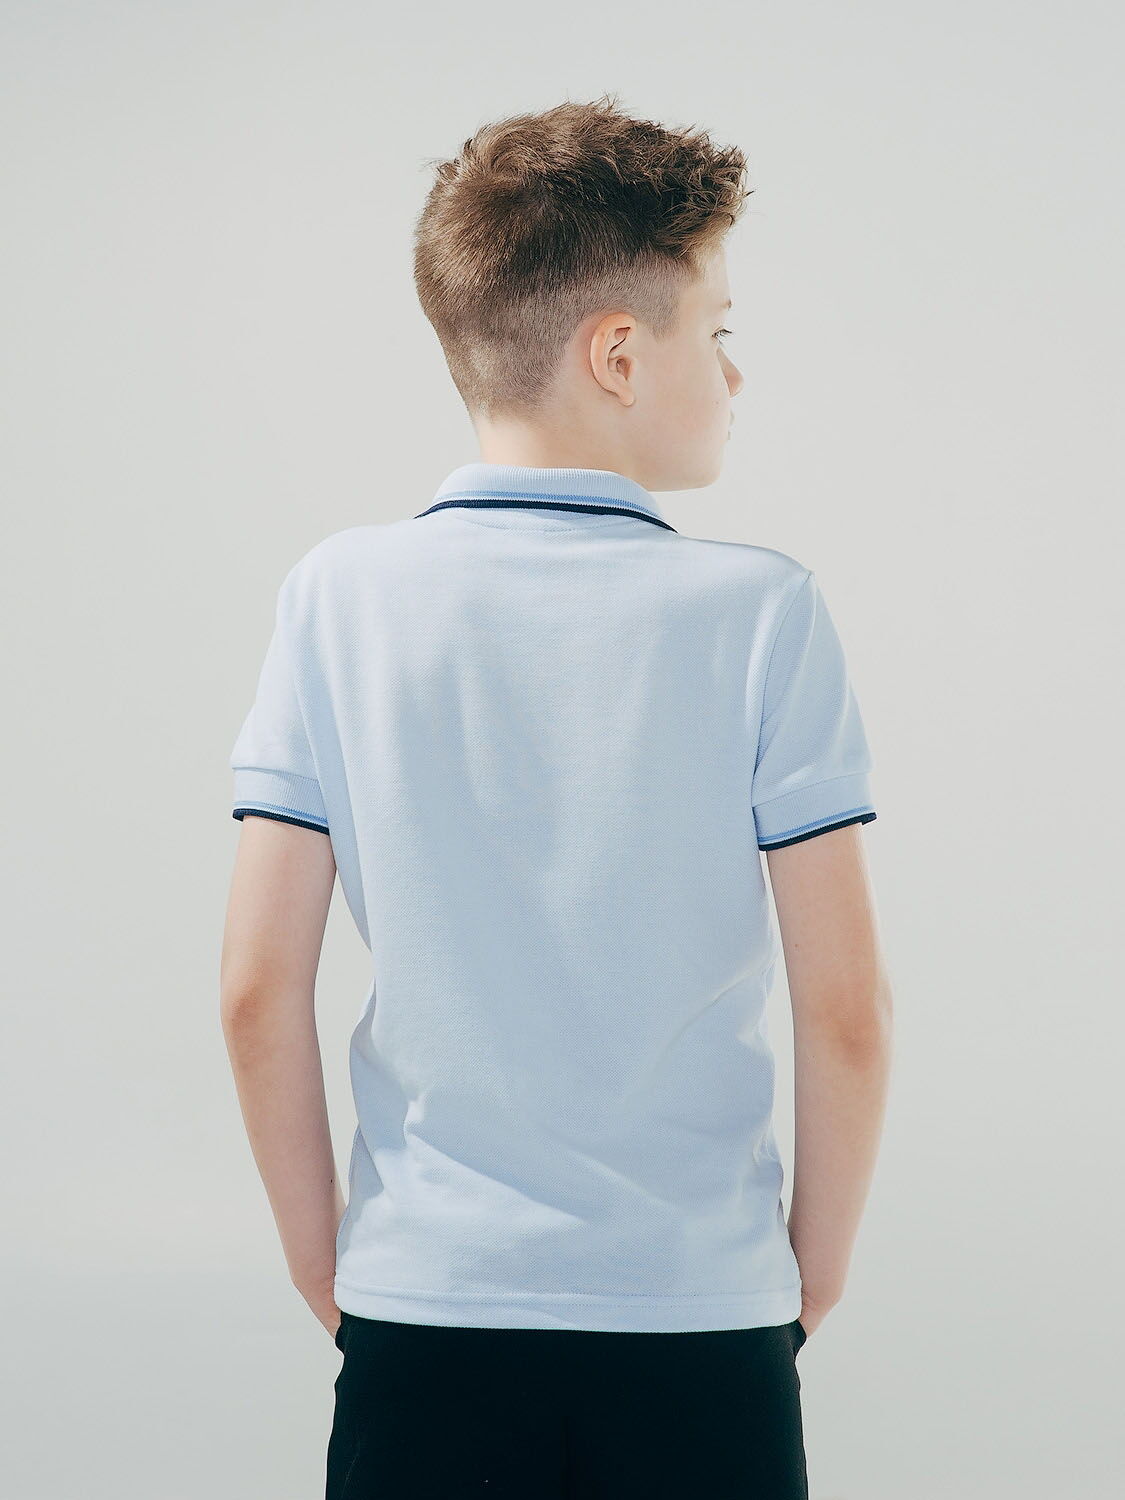 Футболка-поло с коротким рукавом для мальчика SMIL голубая 114595 - размеры